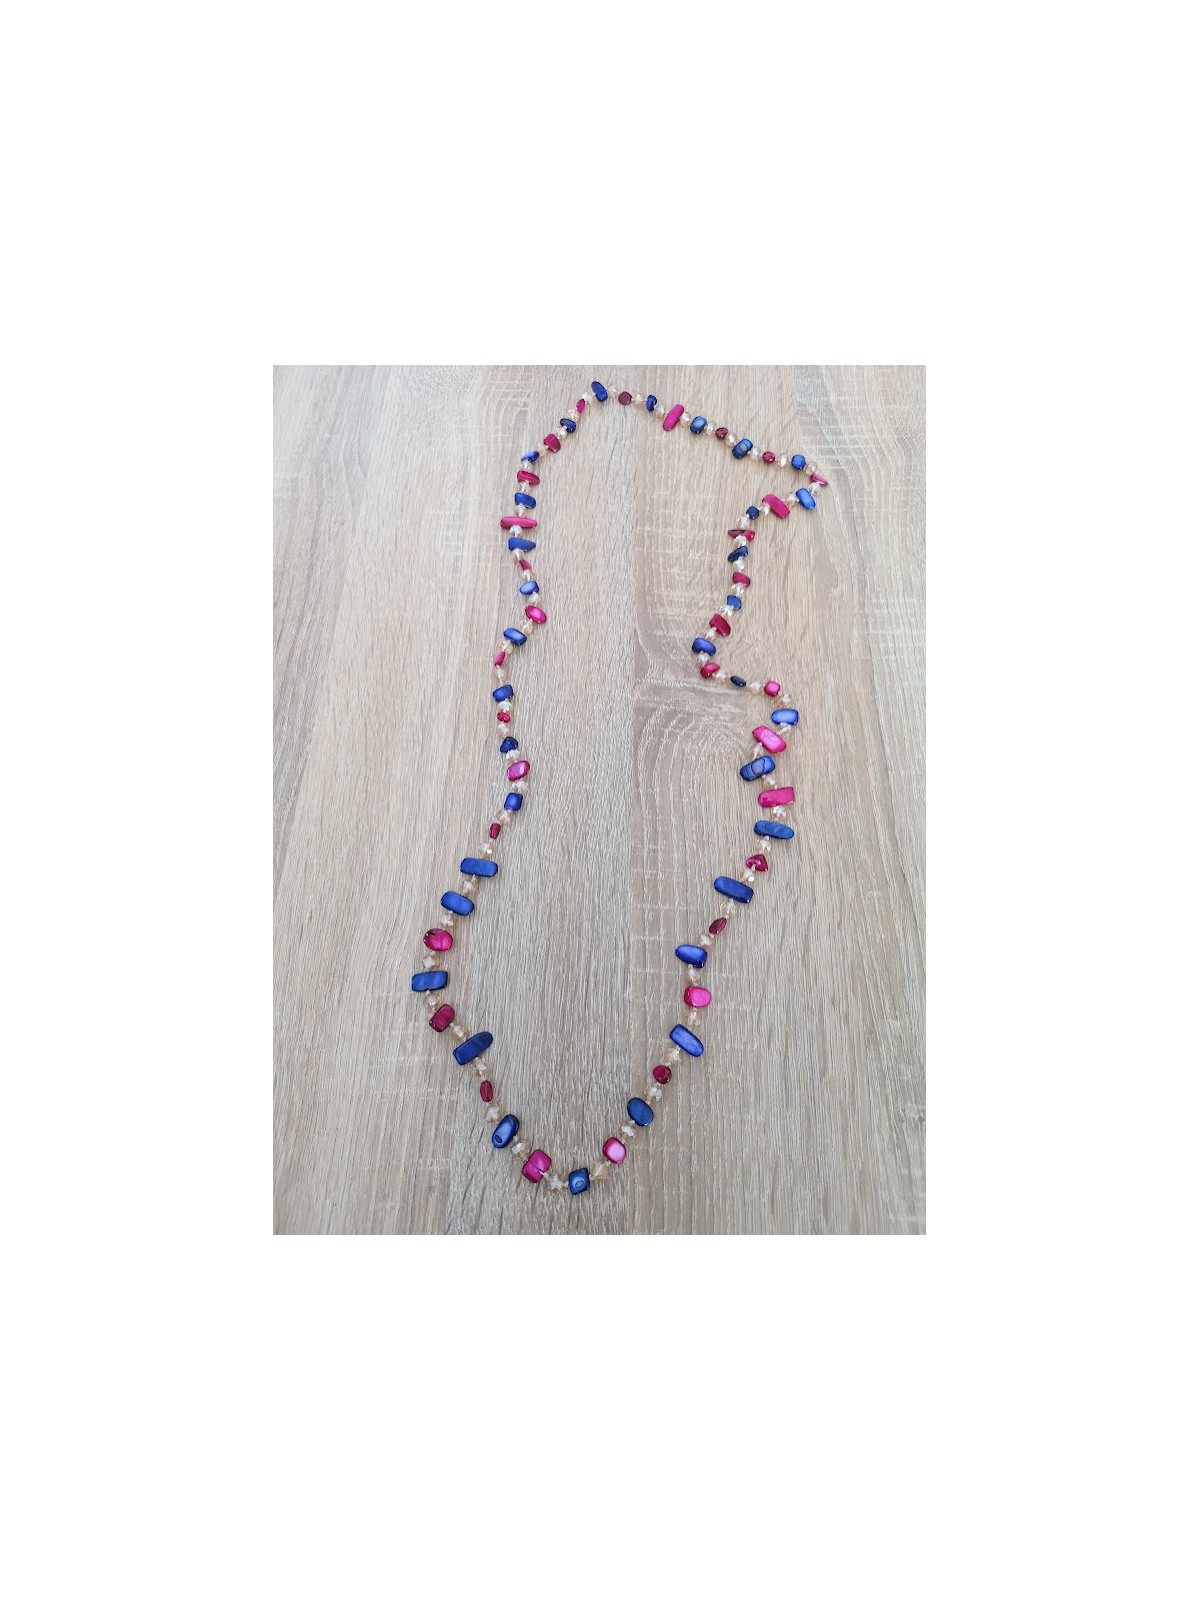 Sautoir perles bleues et roses l 1 vue collier l Tilleulmenthe mode boutique de vêtements femme en ligne